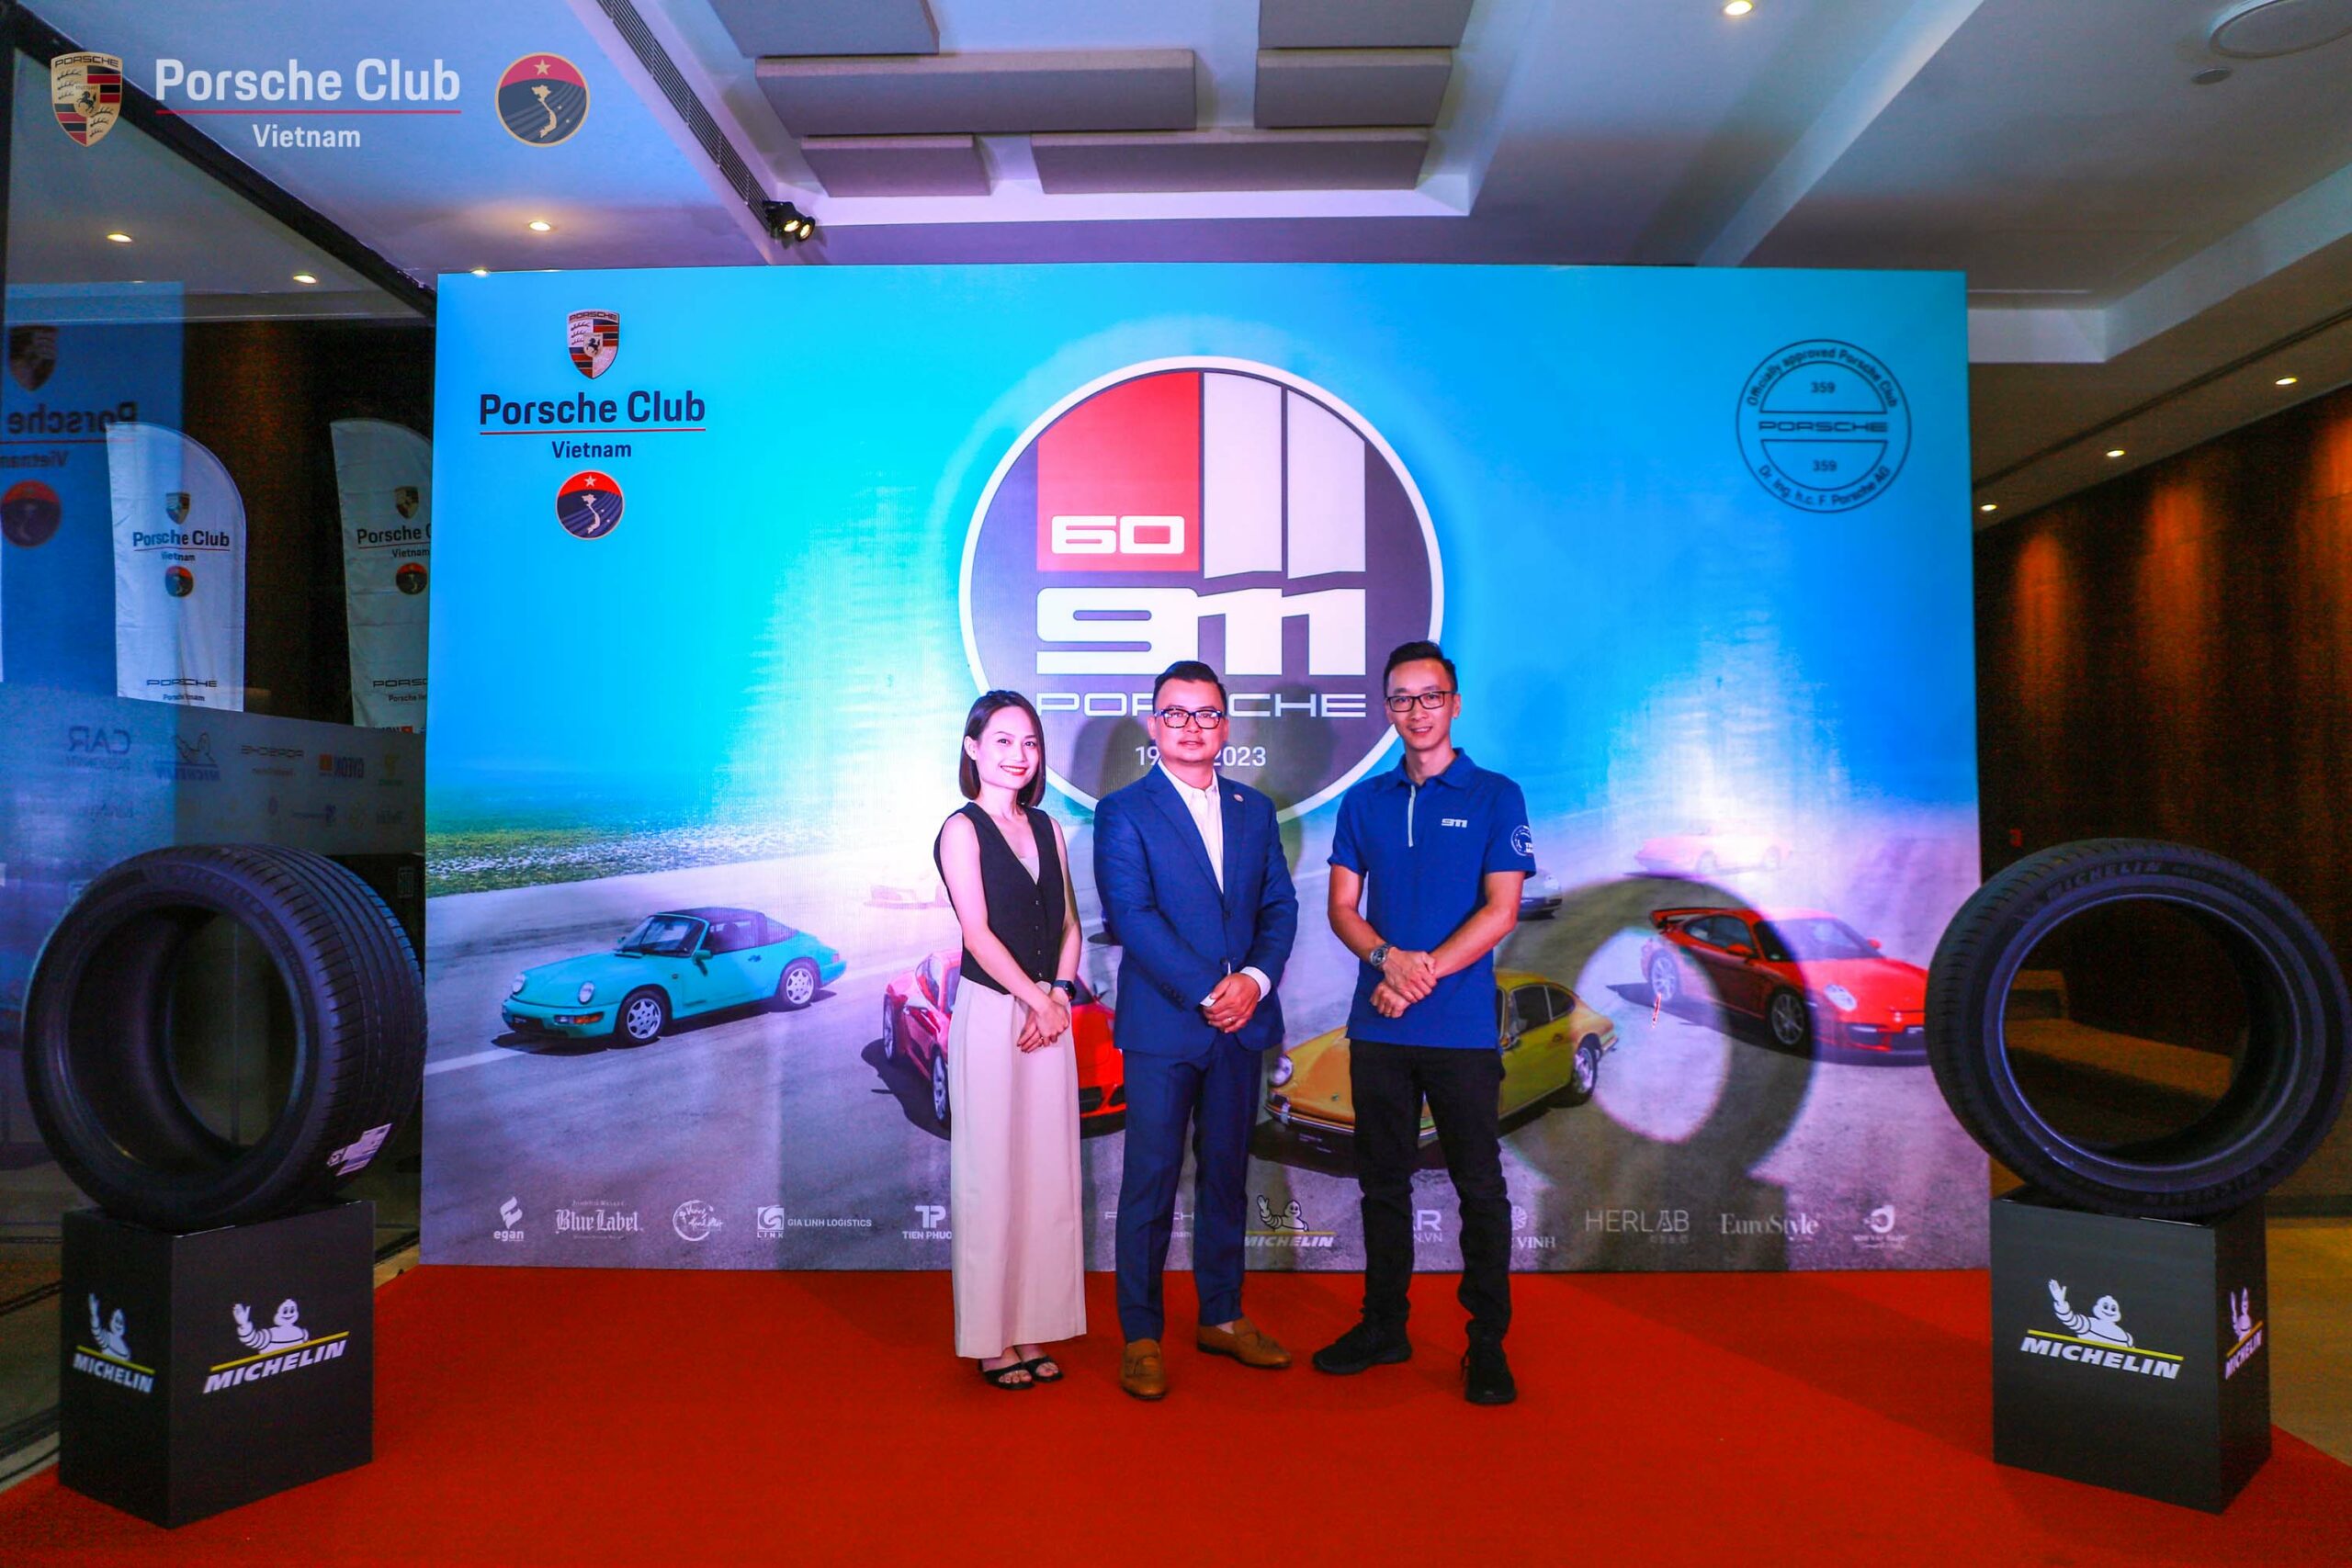 [4th Anniversary Porsche Club Vietnam] Đêm gala đặc sắc gắn kết thành viên yêu Porsche 3 miền, cùng nhau đi xa hơn